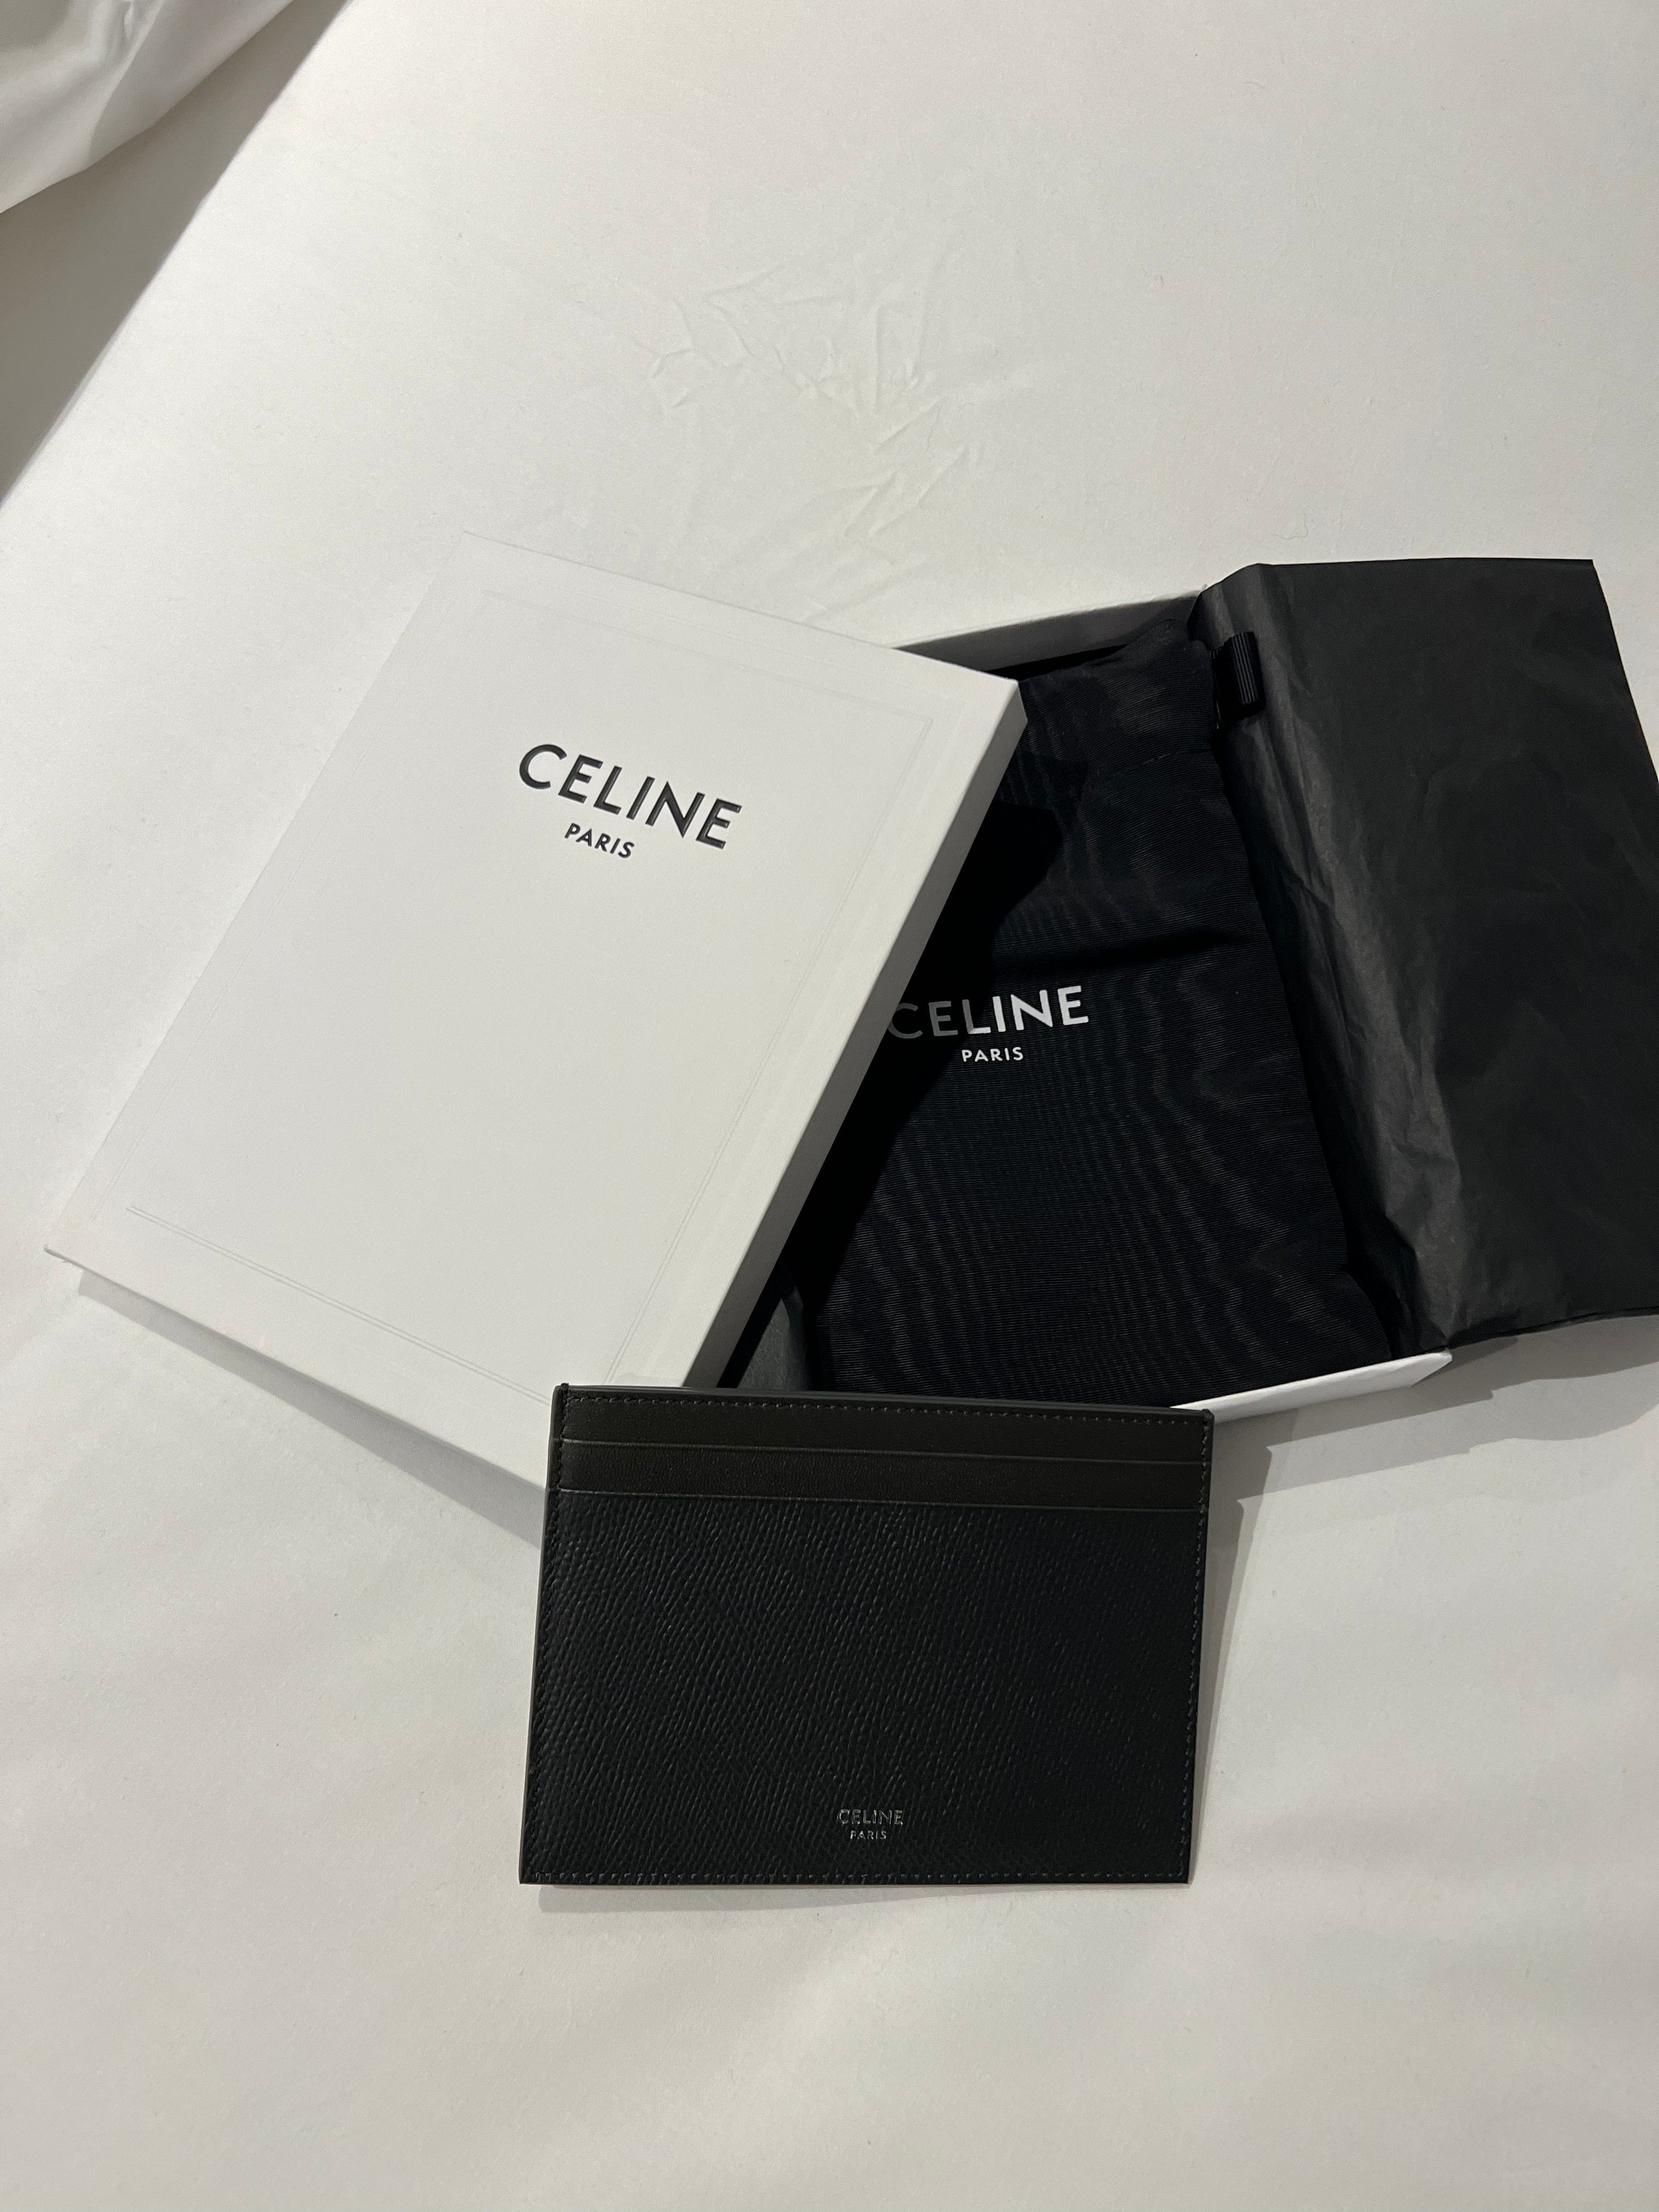 Celine Celine Card holder ASL6170